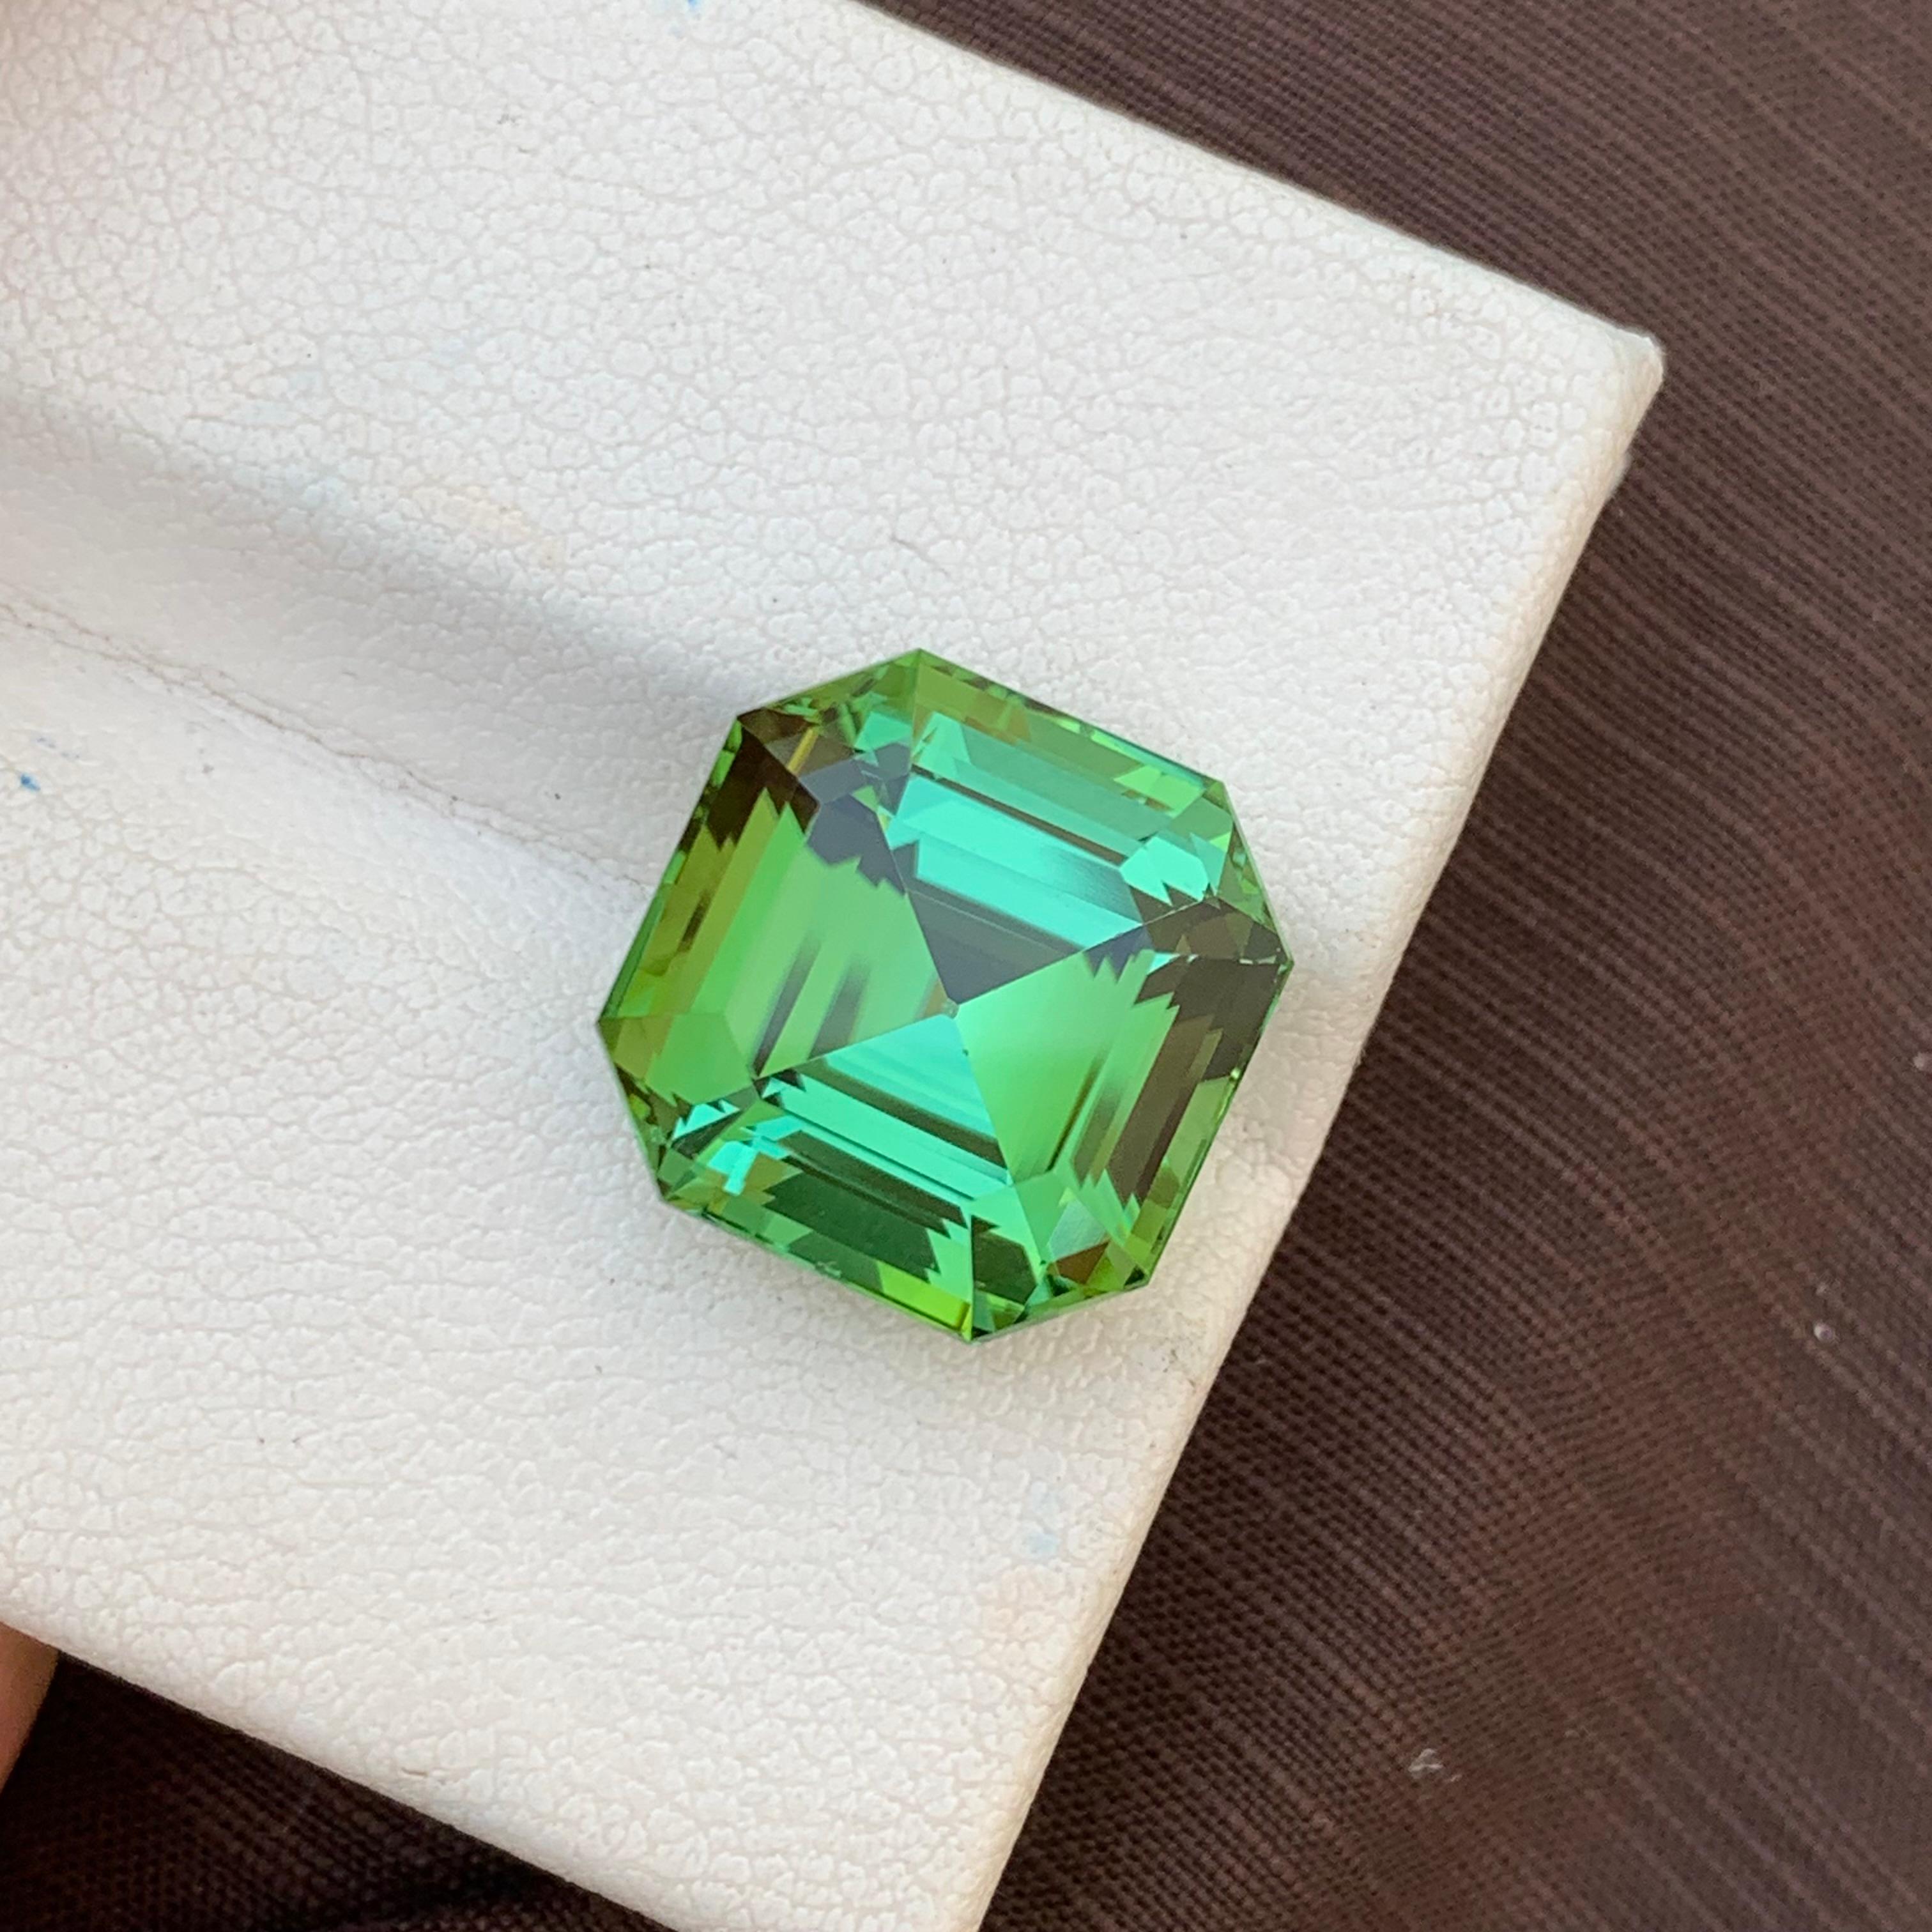 Gorgeous Mint Green Loose Tourmaline Ring Gem 12.35 Carats Asscher Cut Gemstone For Sale 7